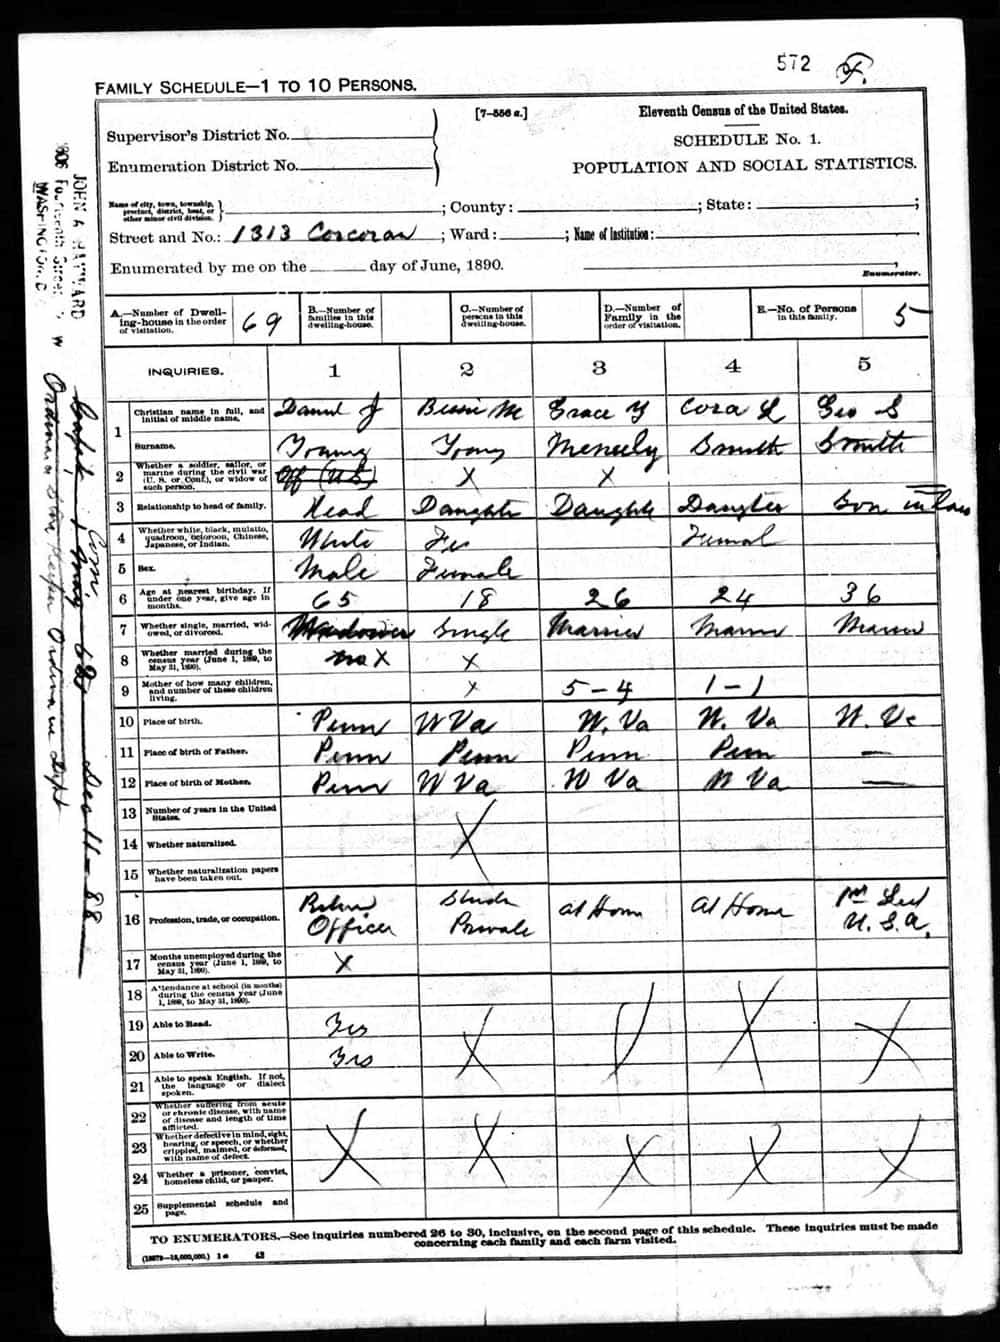 1890 census records